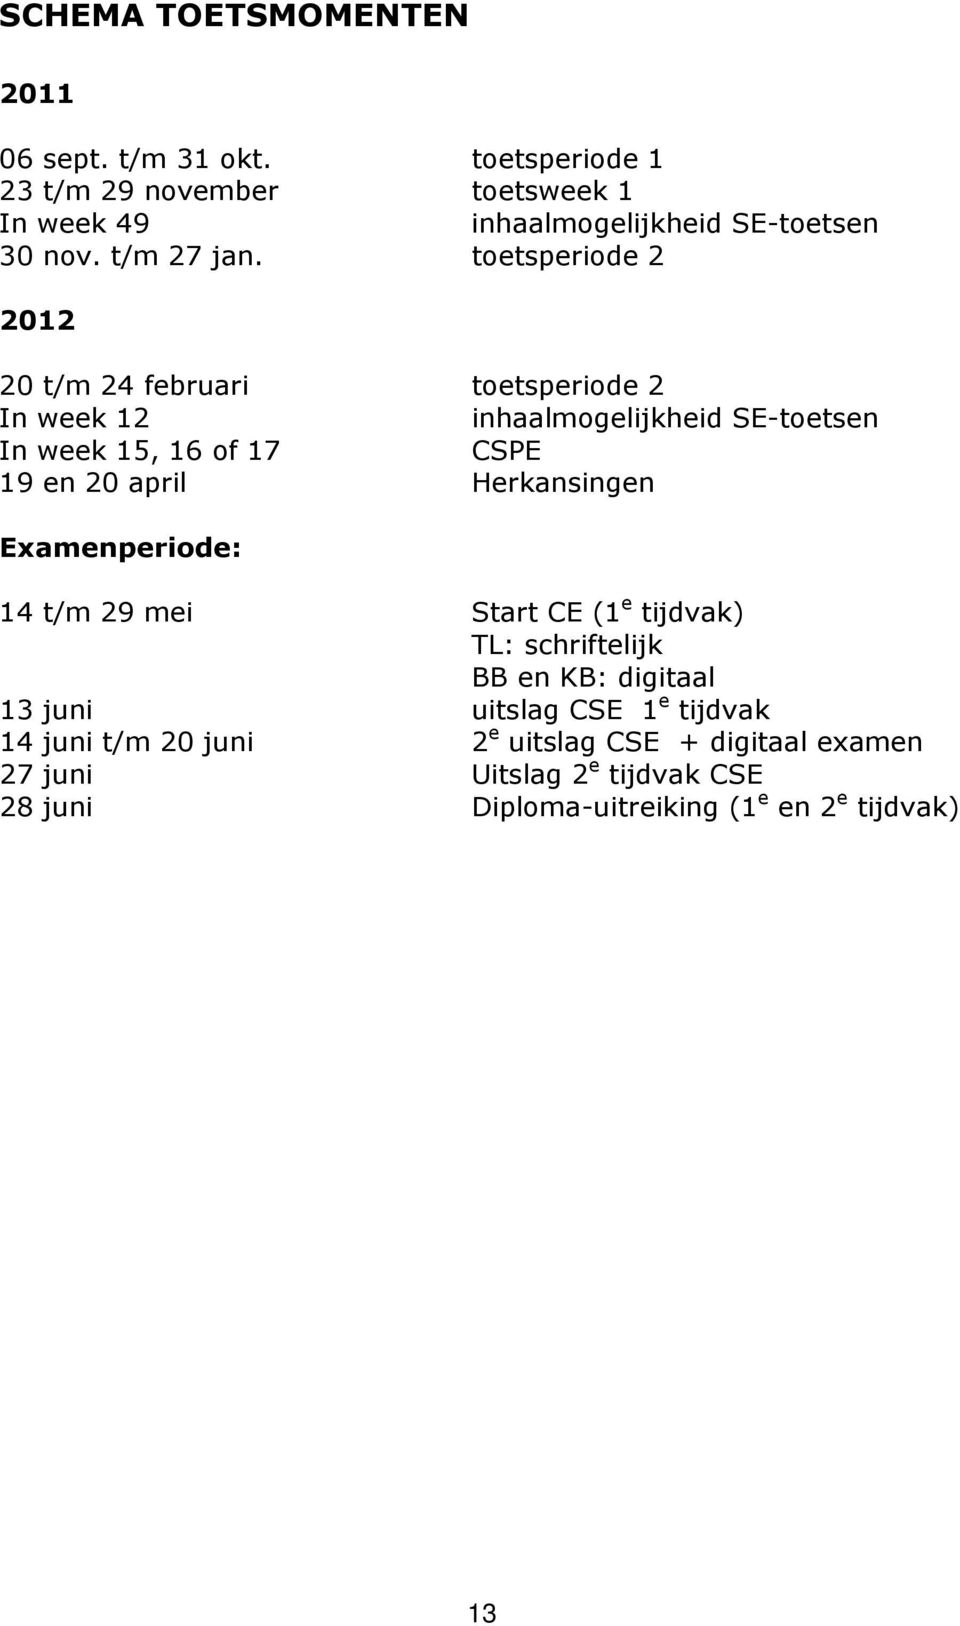 toetsperiode 2 2012 20 t/m 24 februari toetsperiode 2 In week 12 inhaalmogelijkheid SE-toetsen In week 15, 16 of 17 CSPE 19 en 20 april